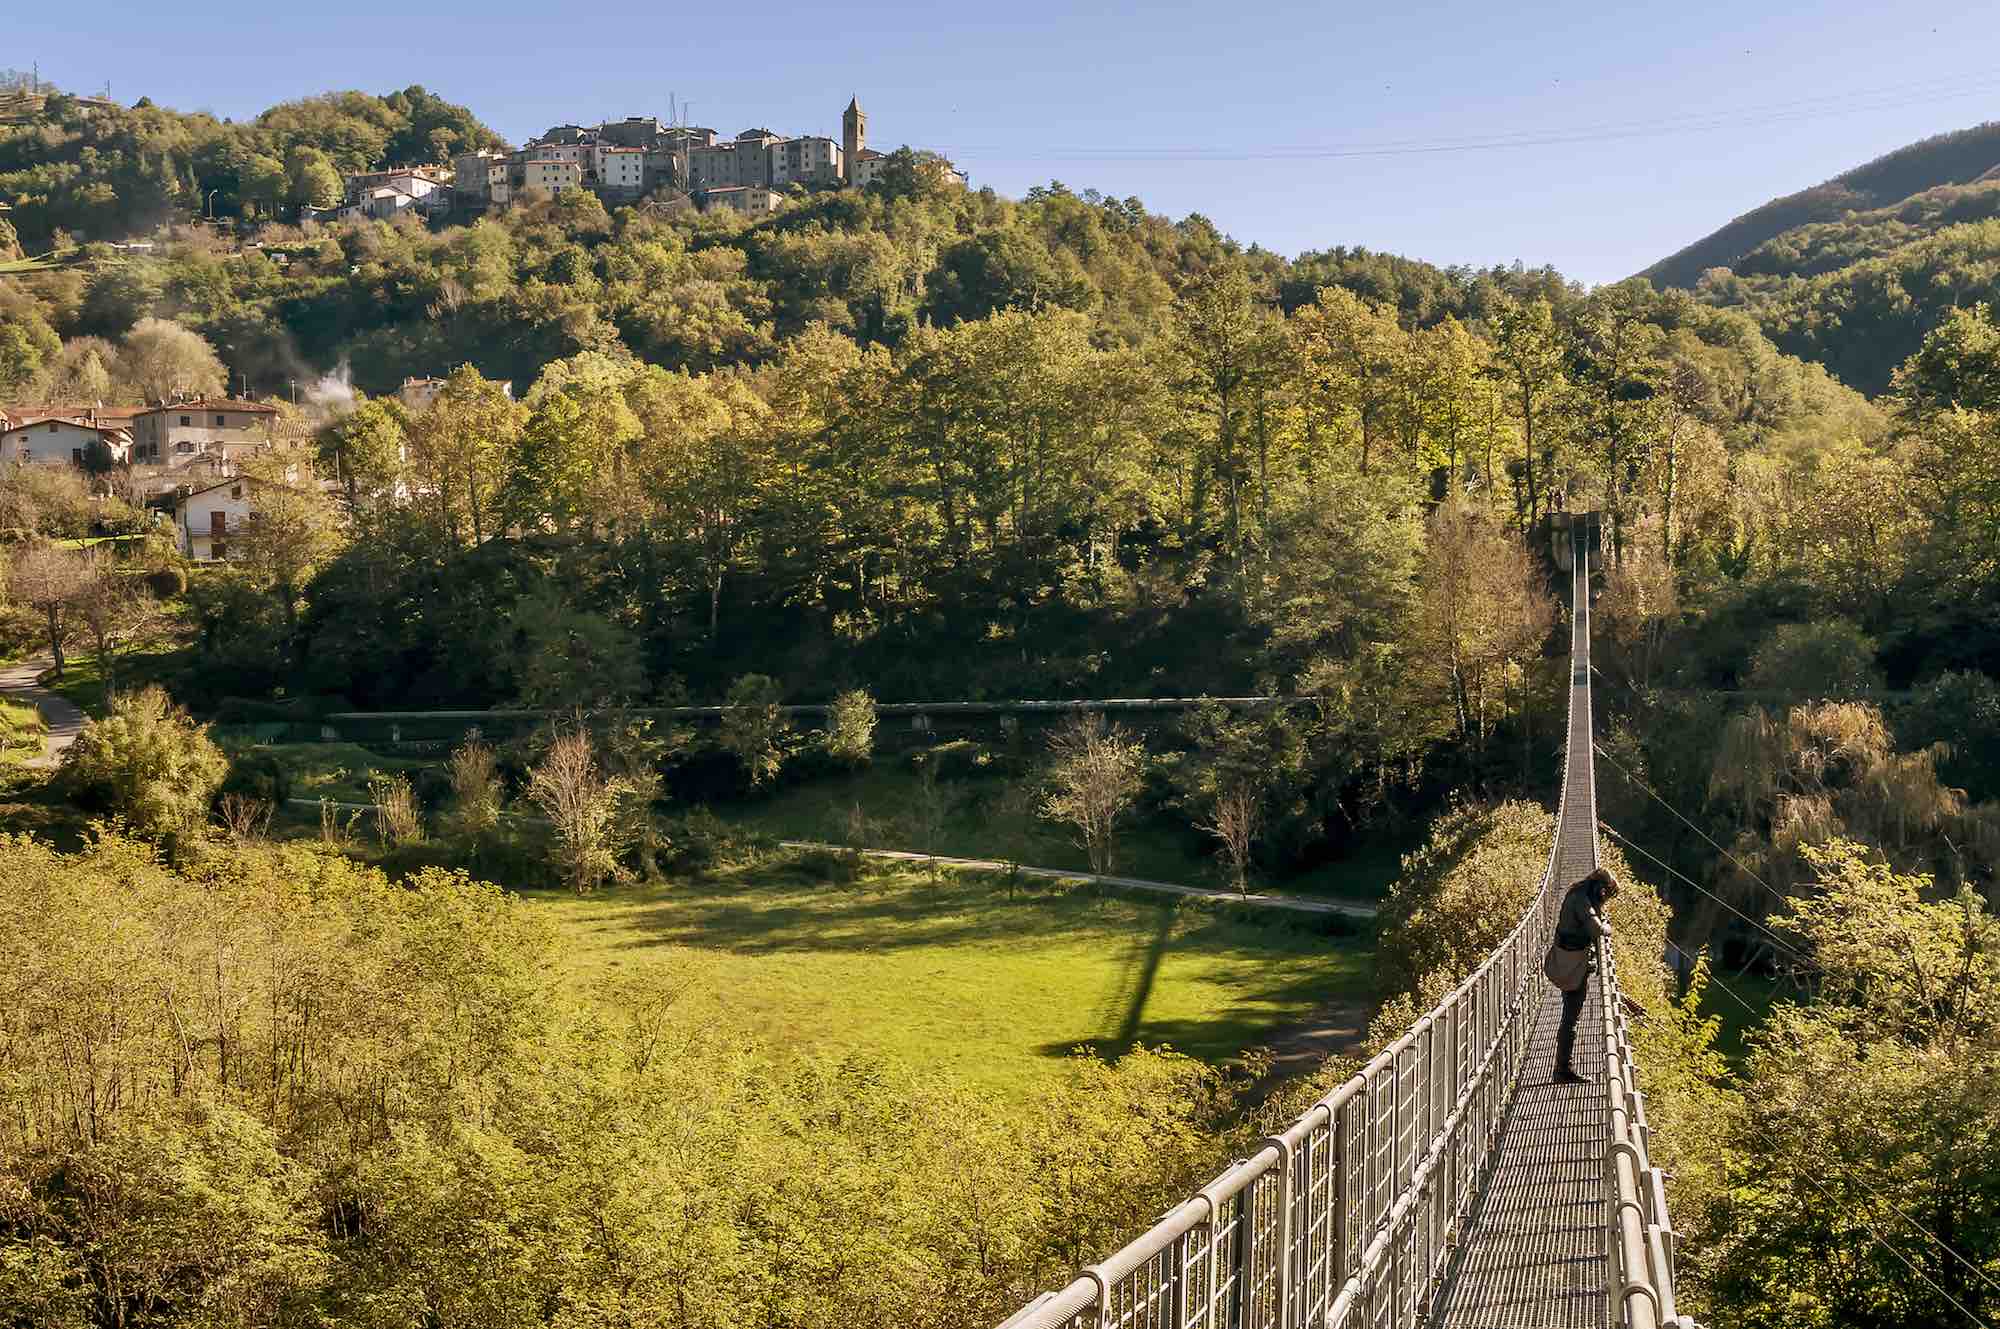 Il Ponte Sospeso delle Ferriere in Toscana, è uno dei ponti sospesi più lunghi del mondo